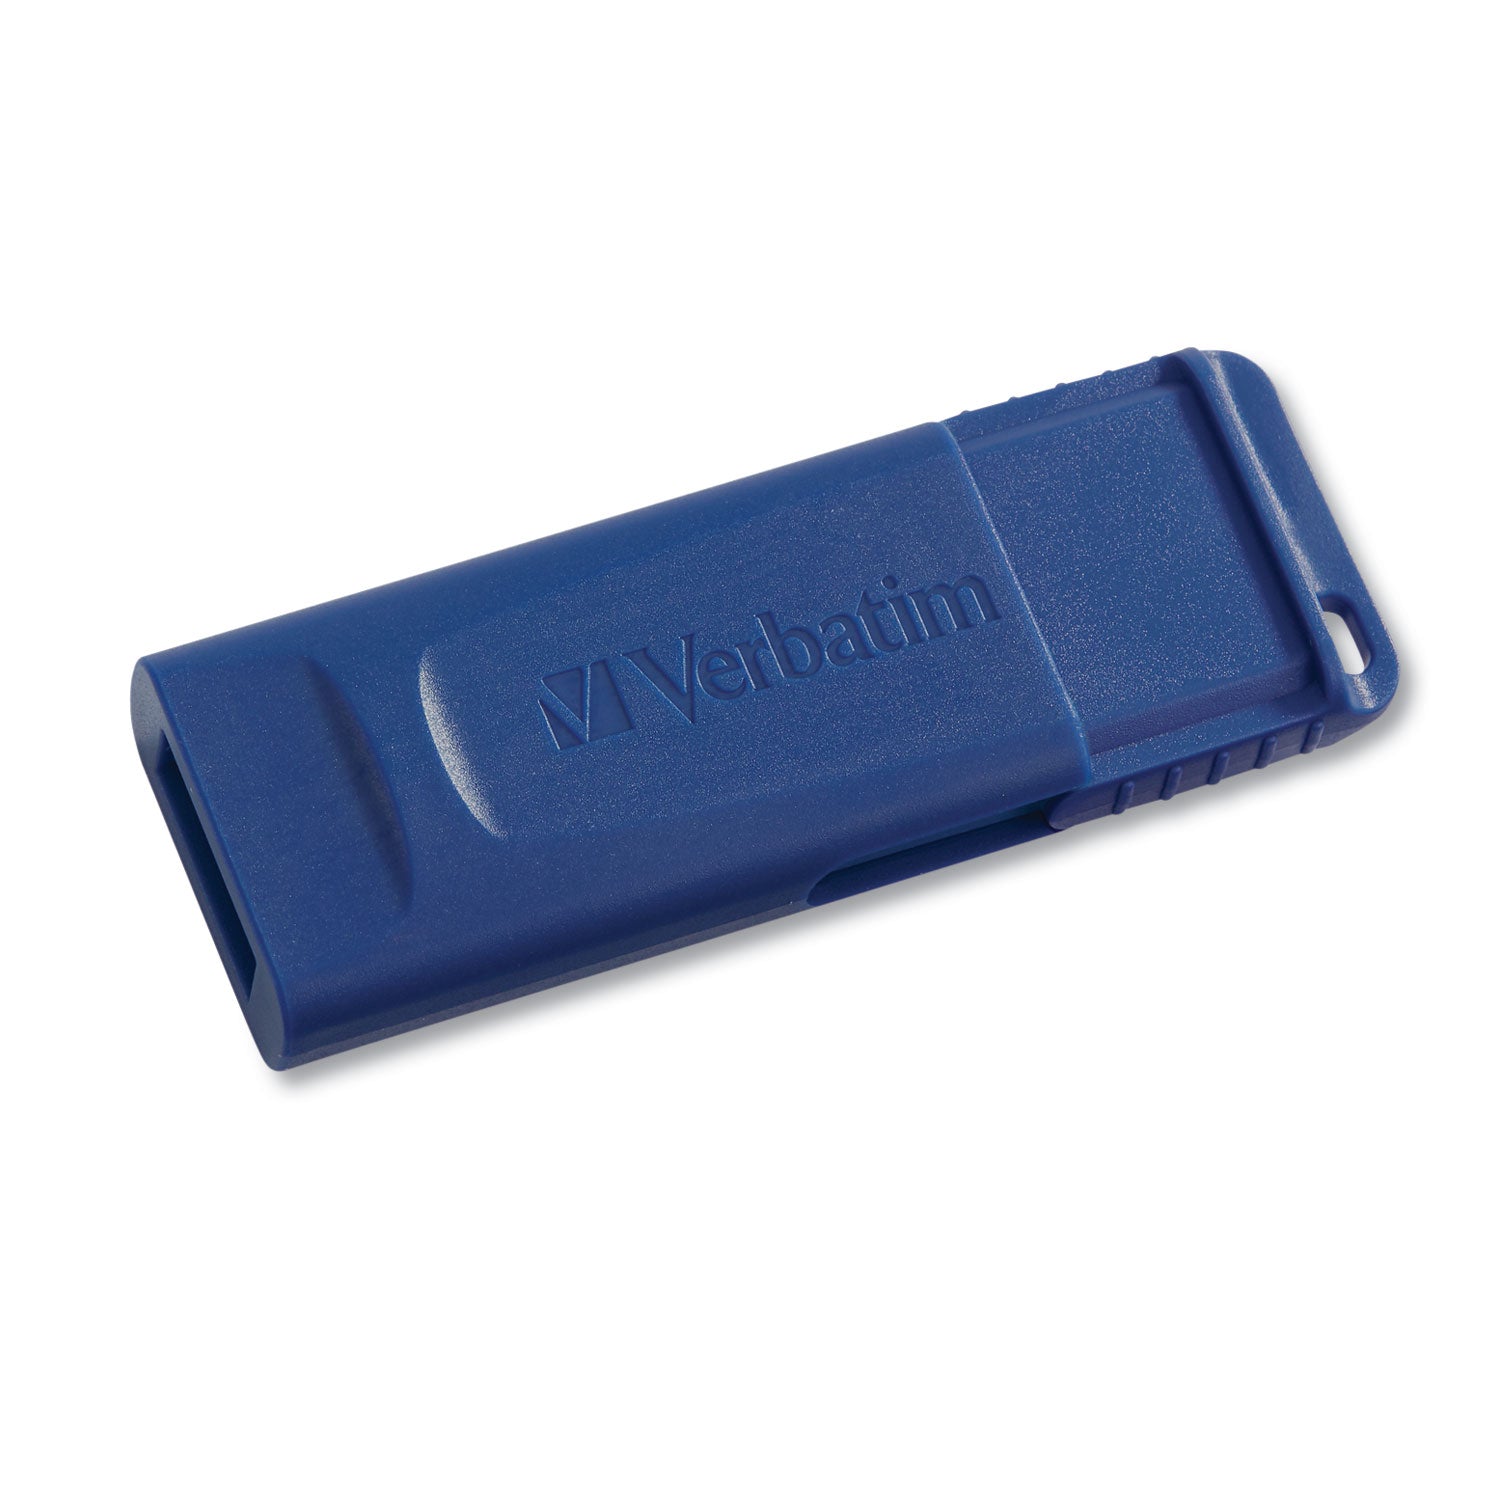 Classic USB 2.0 Flash Drive, 8 GB, Blue - 1